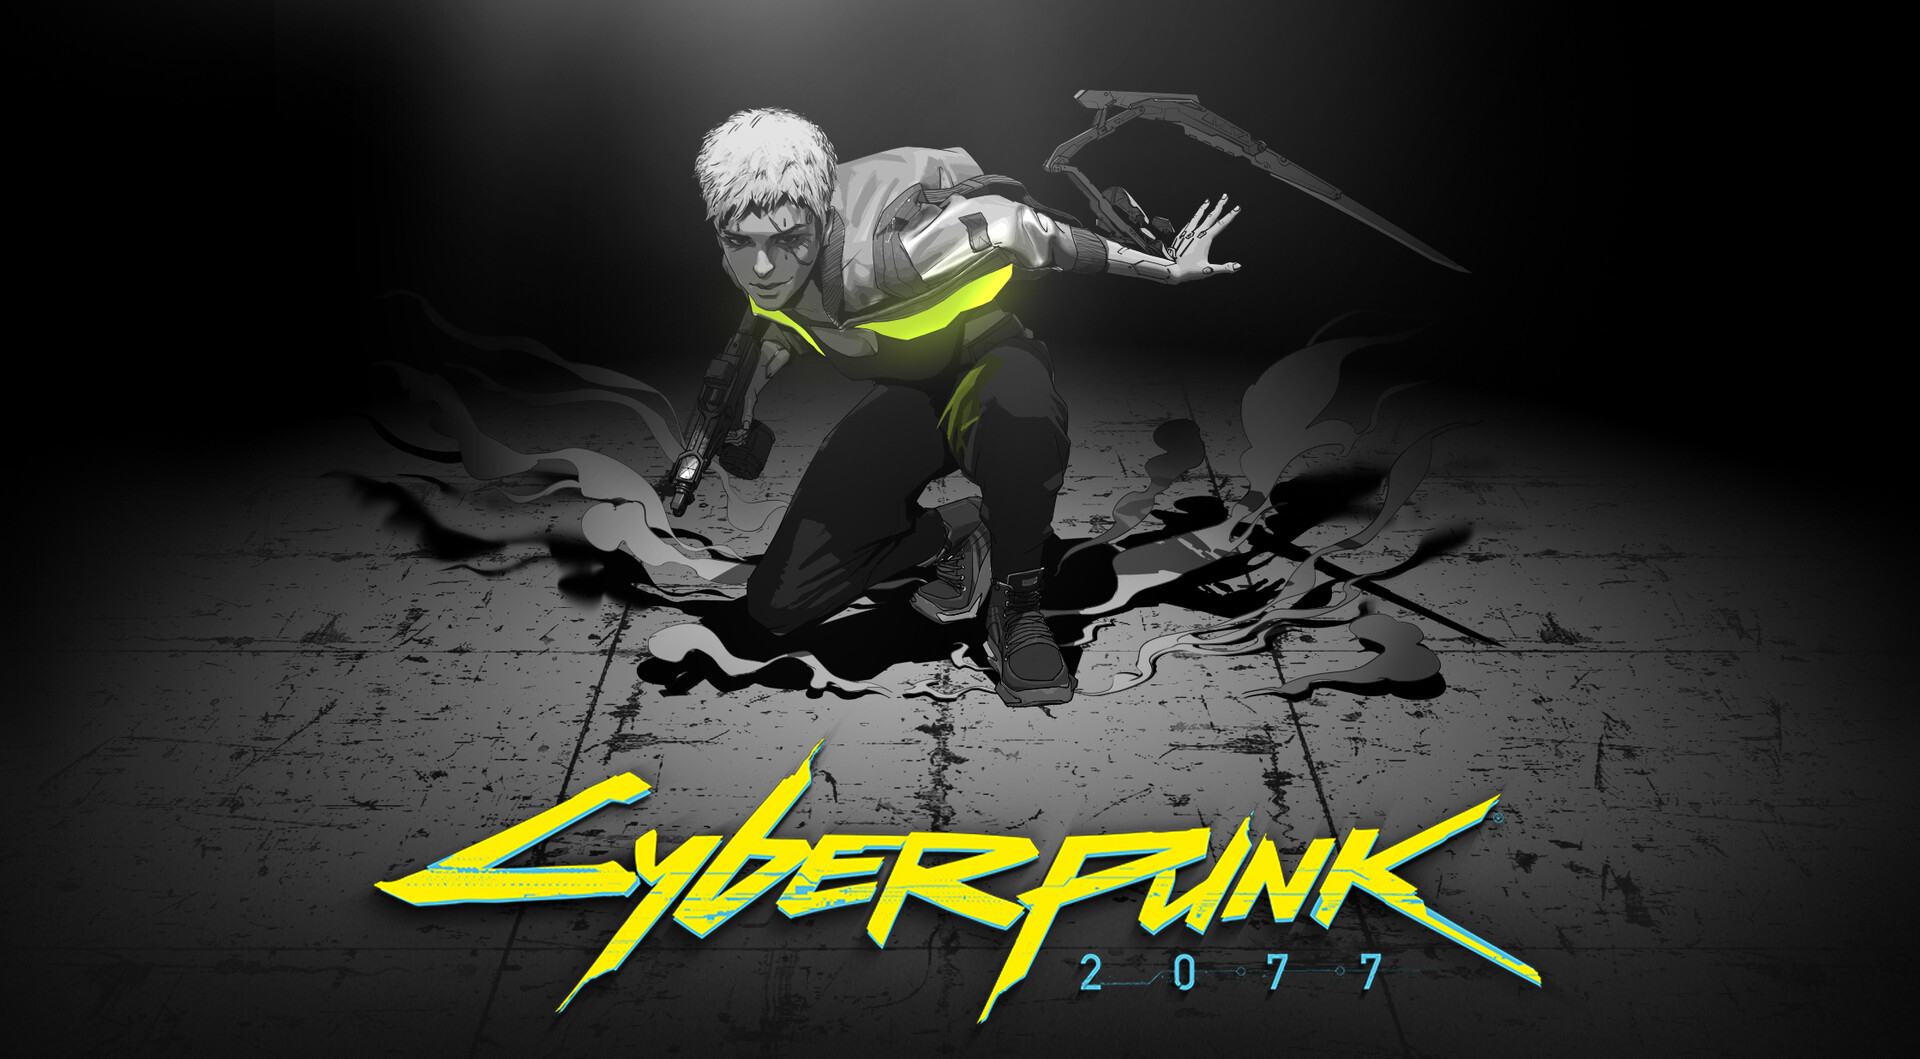 Cyberpunk 2077 2021 Art Wallpaper, HD Games 4K Wallpapers, Images